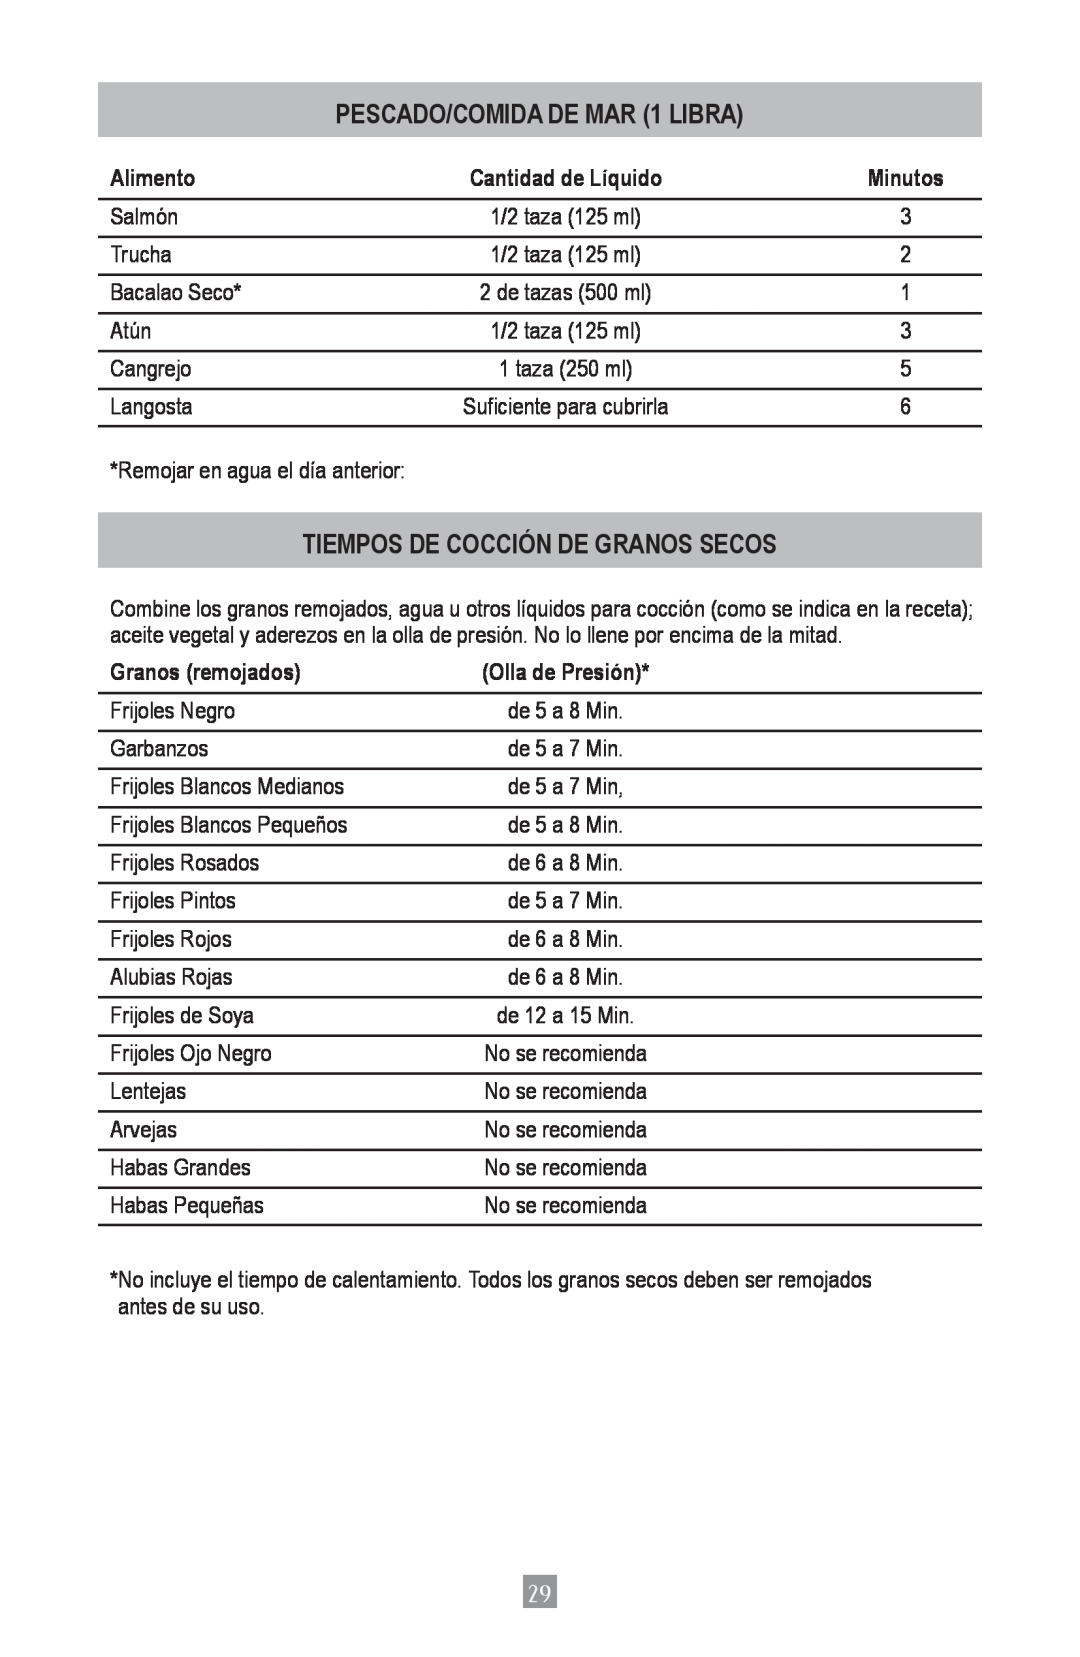 Oster 4801 instruction manual PESCADO/COMIDA DE MAR 1 LIBRA, Tiempos De Cocción De Granos Secos, Alimento, Granos remojados 